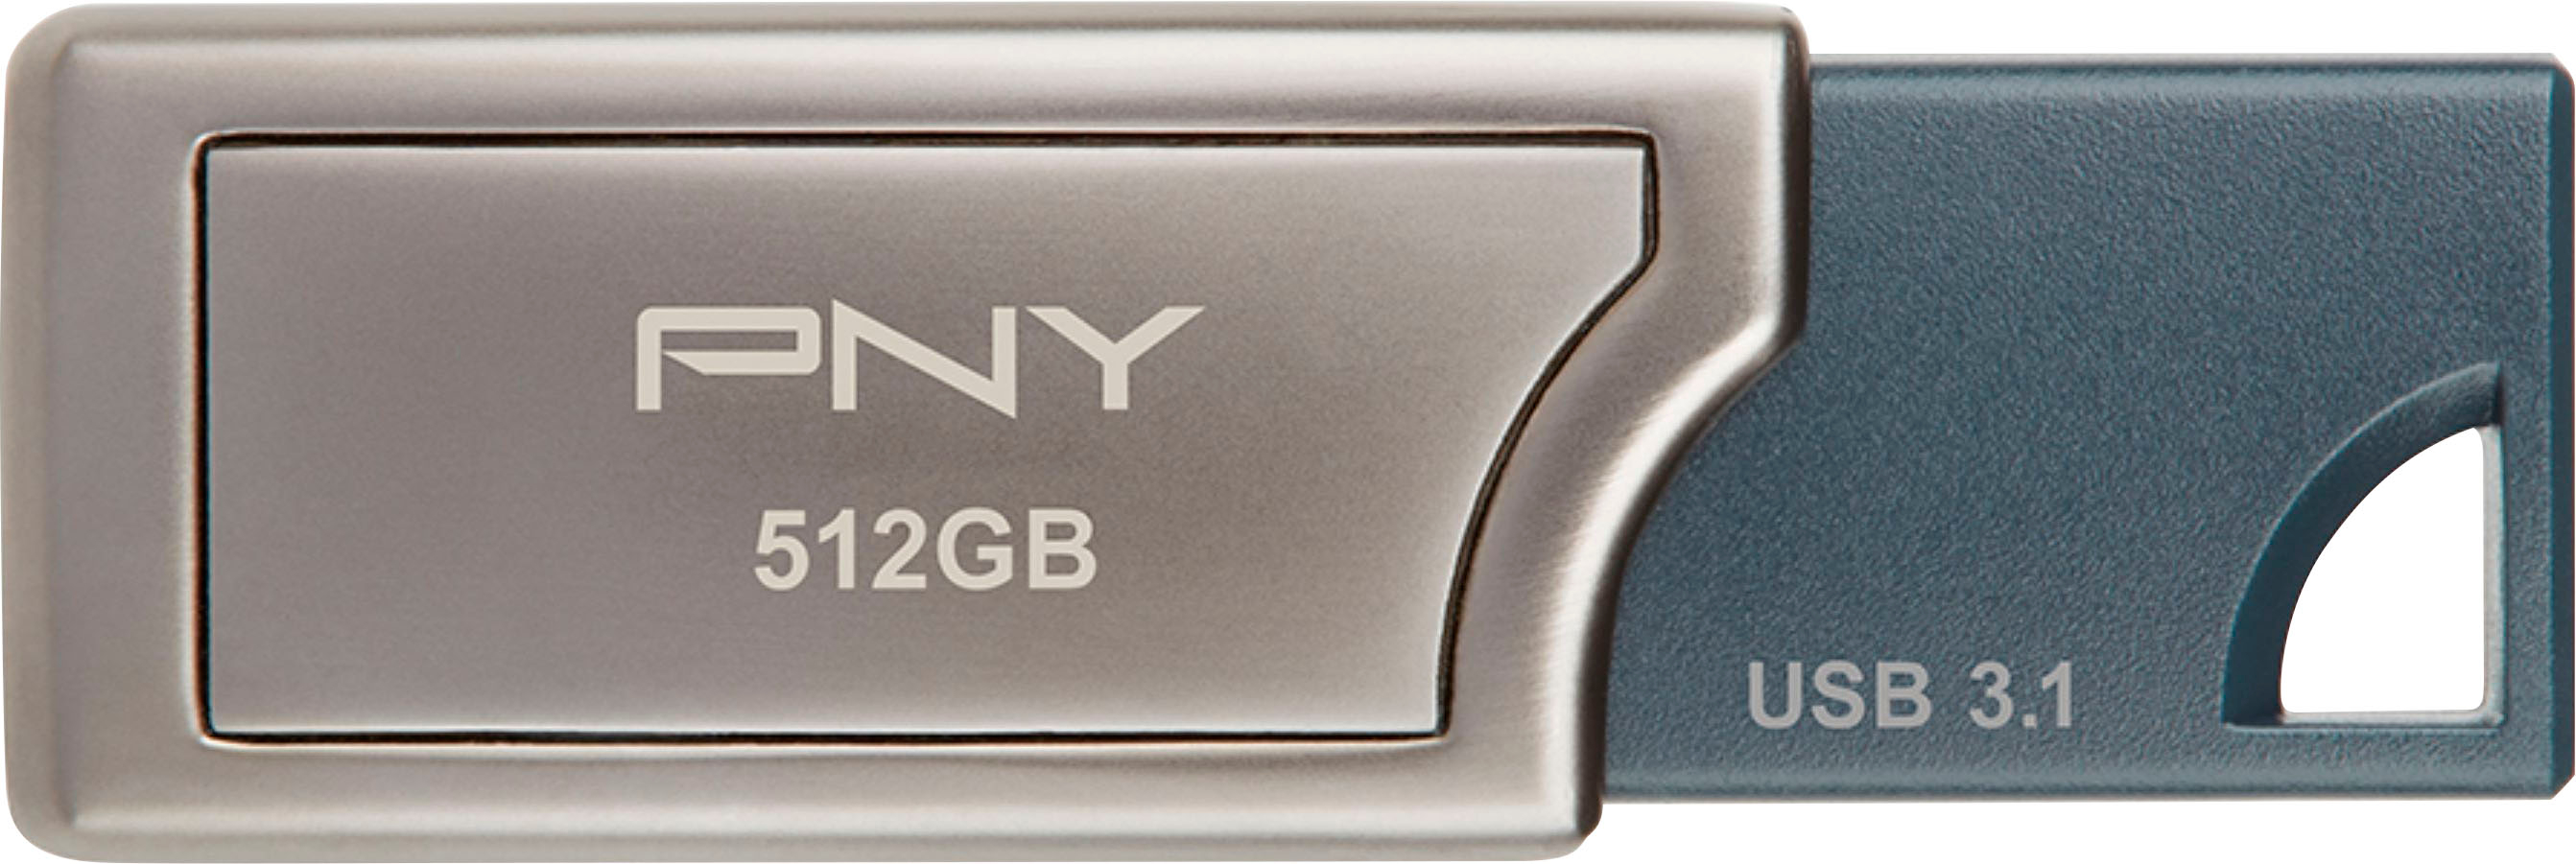 PNY - 512GB PRO Elite USB 3.1 Flash Drive - 400MB/s